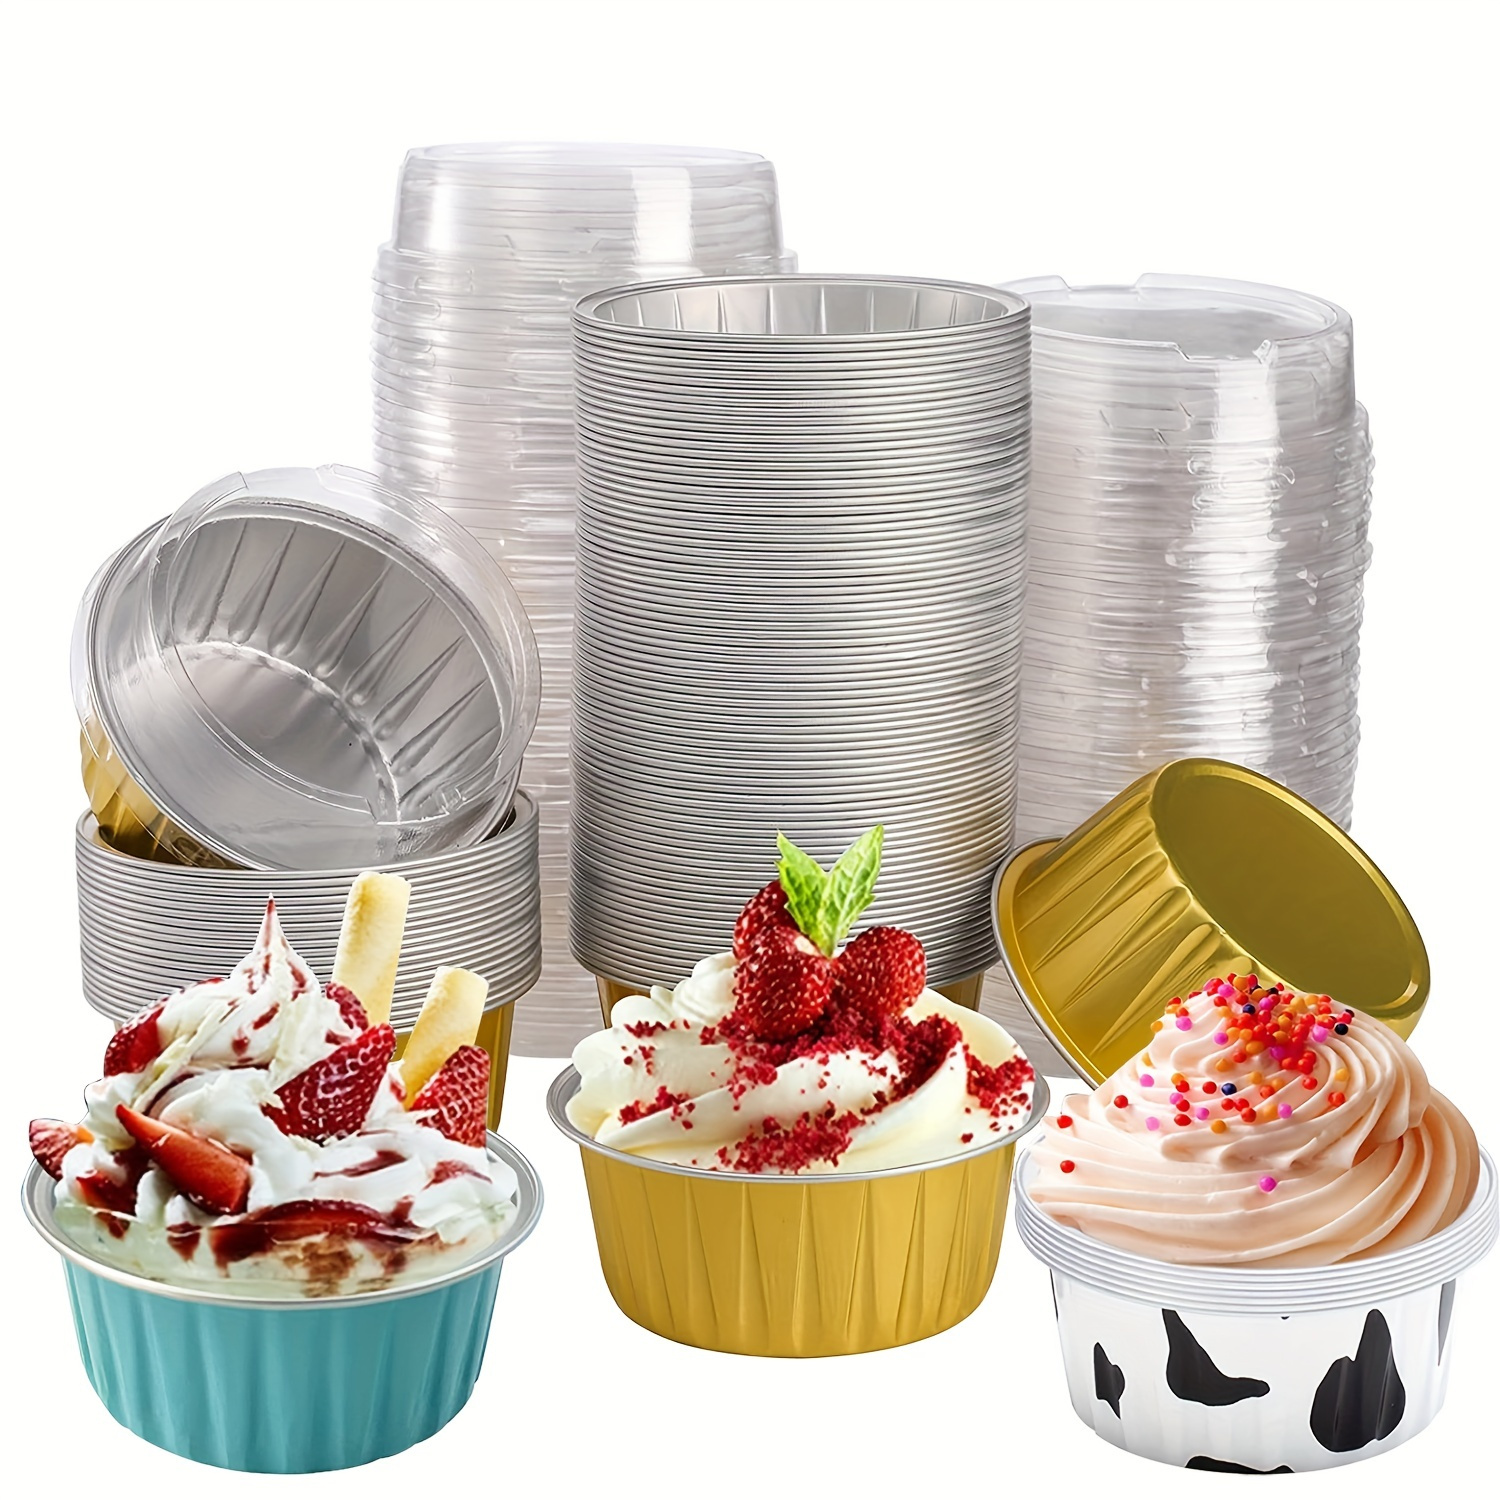 50pcs Foil Cupcake Liners with Lids Heat Resistant 5.5oz Aluminum Cake Cups  Portable Foil Baking Cups Round Aluminum Muffin Liners Cupcake Holders